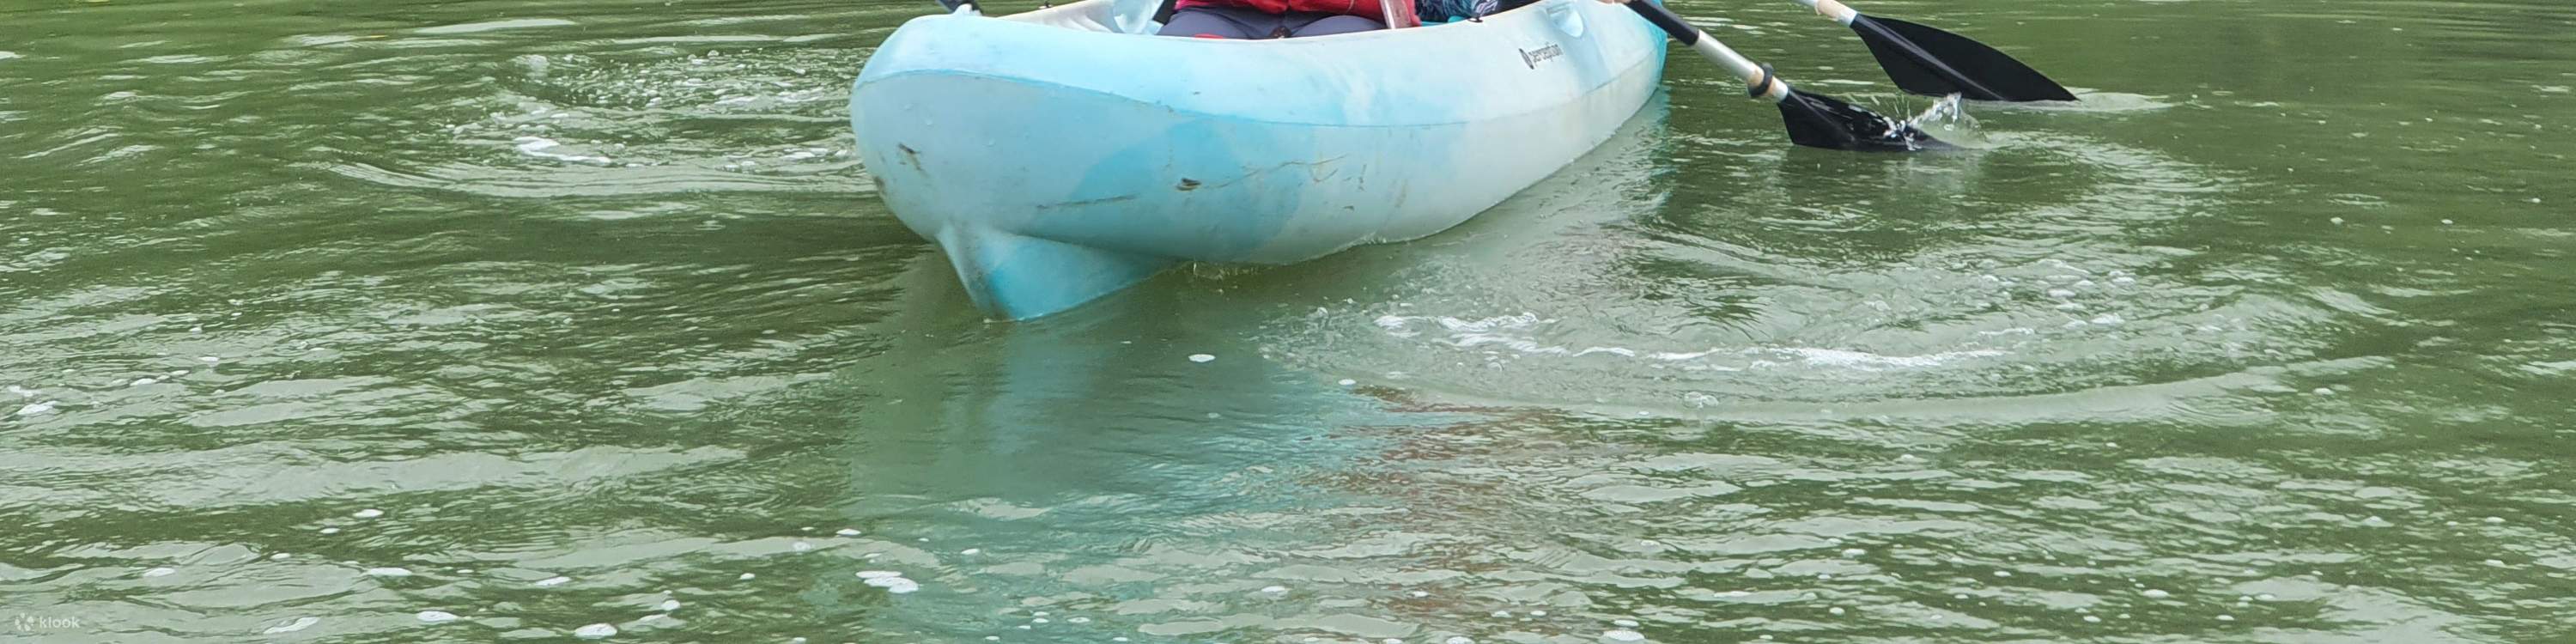 Nature Kayaking - Klook Singapore